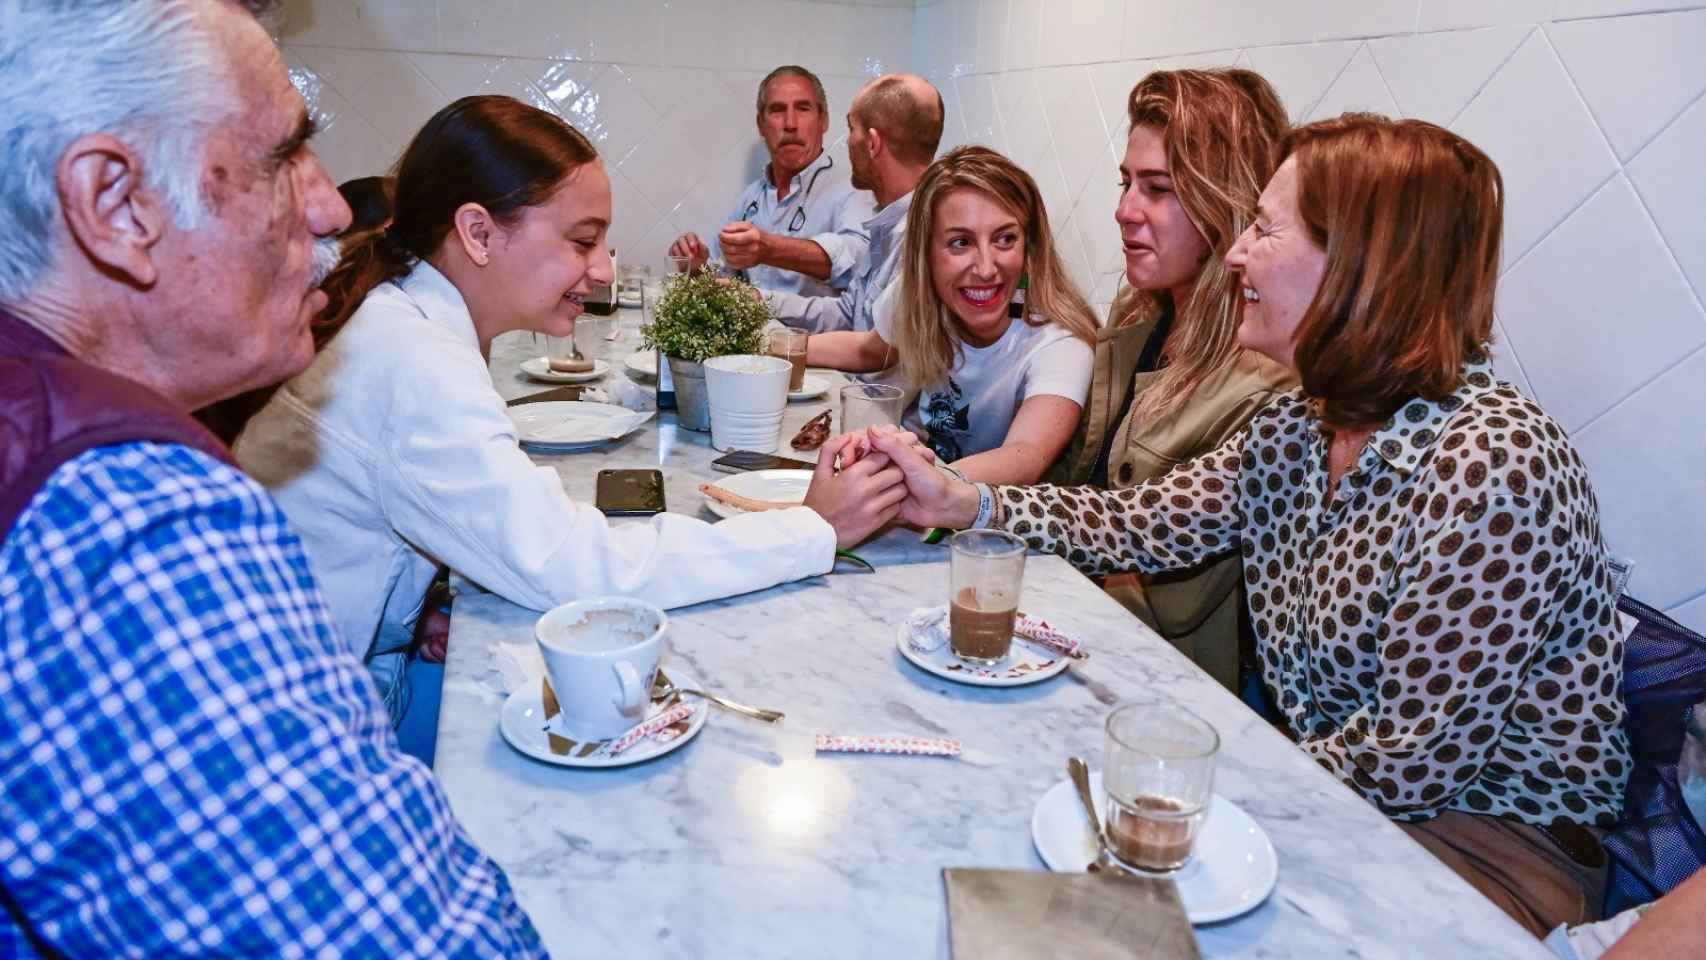 María Guardiola y su familia desayunando en una churrería de Cáceres, durante la jornada de reflexión, el 27 de mayo.